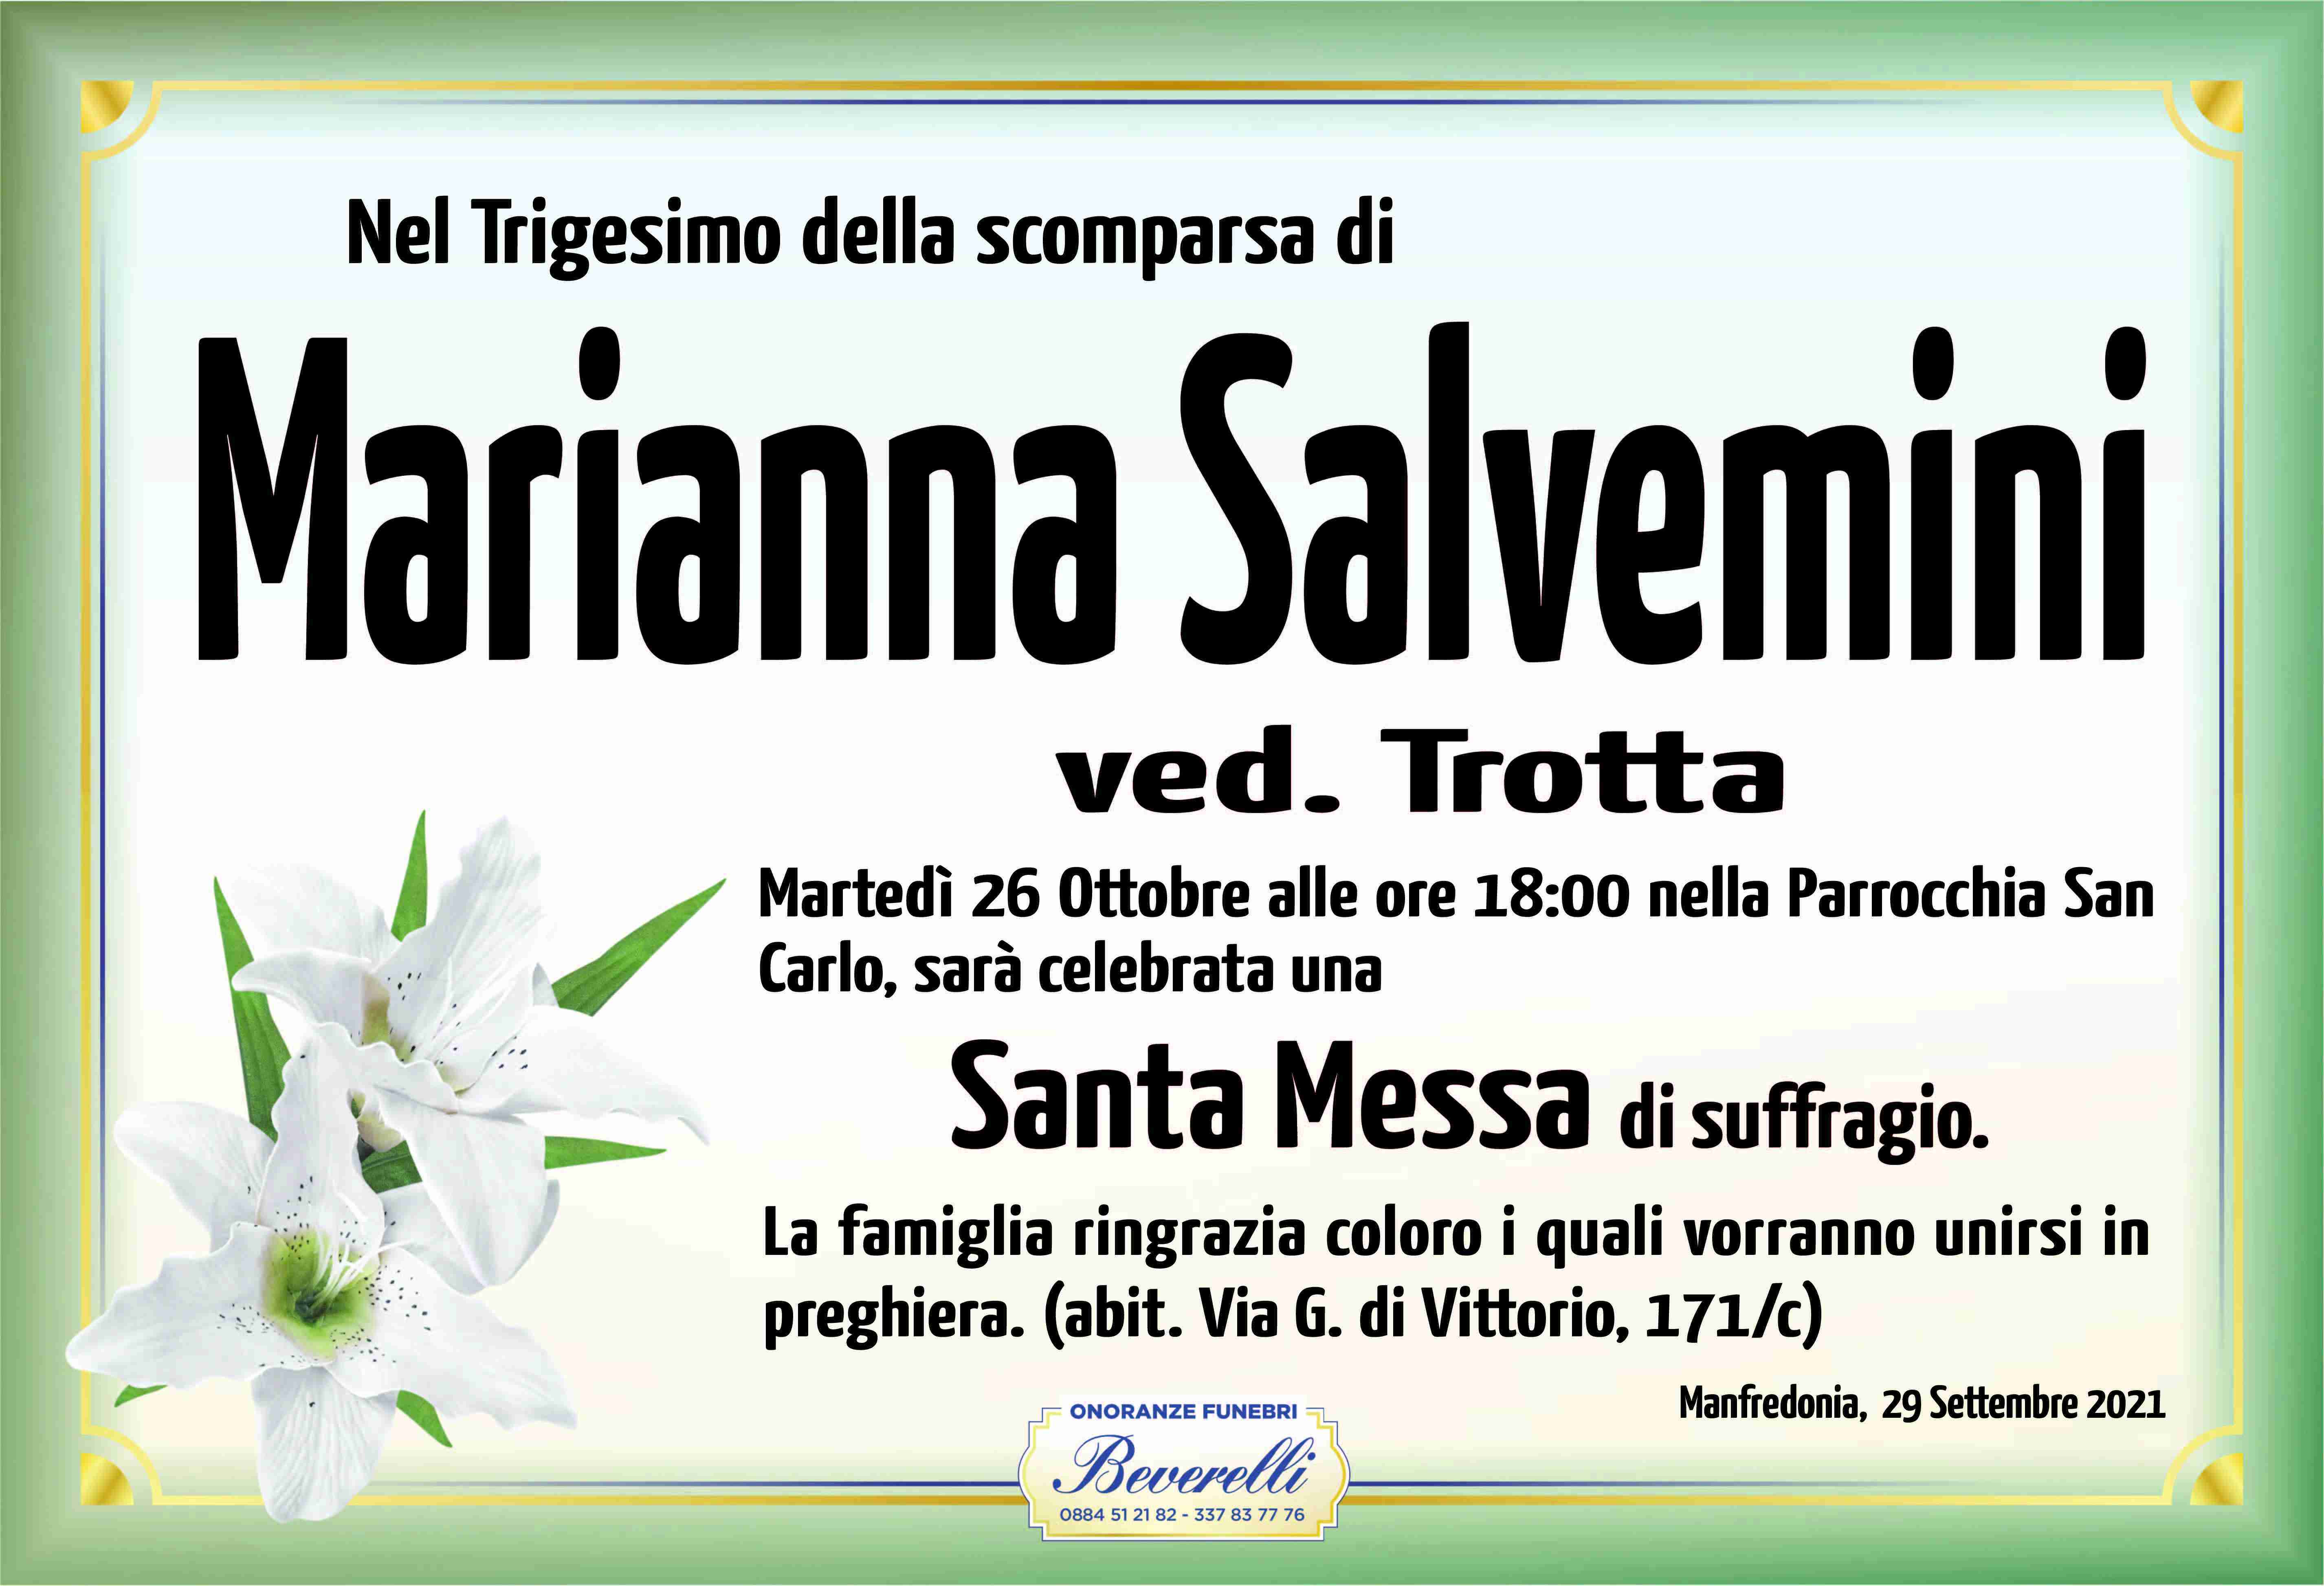 Marianna Salvemini